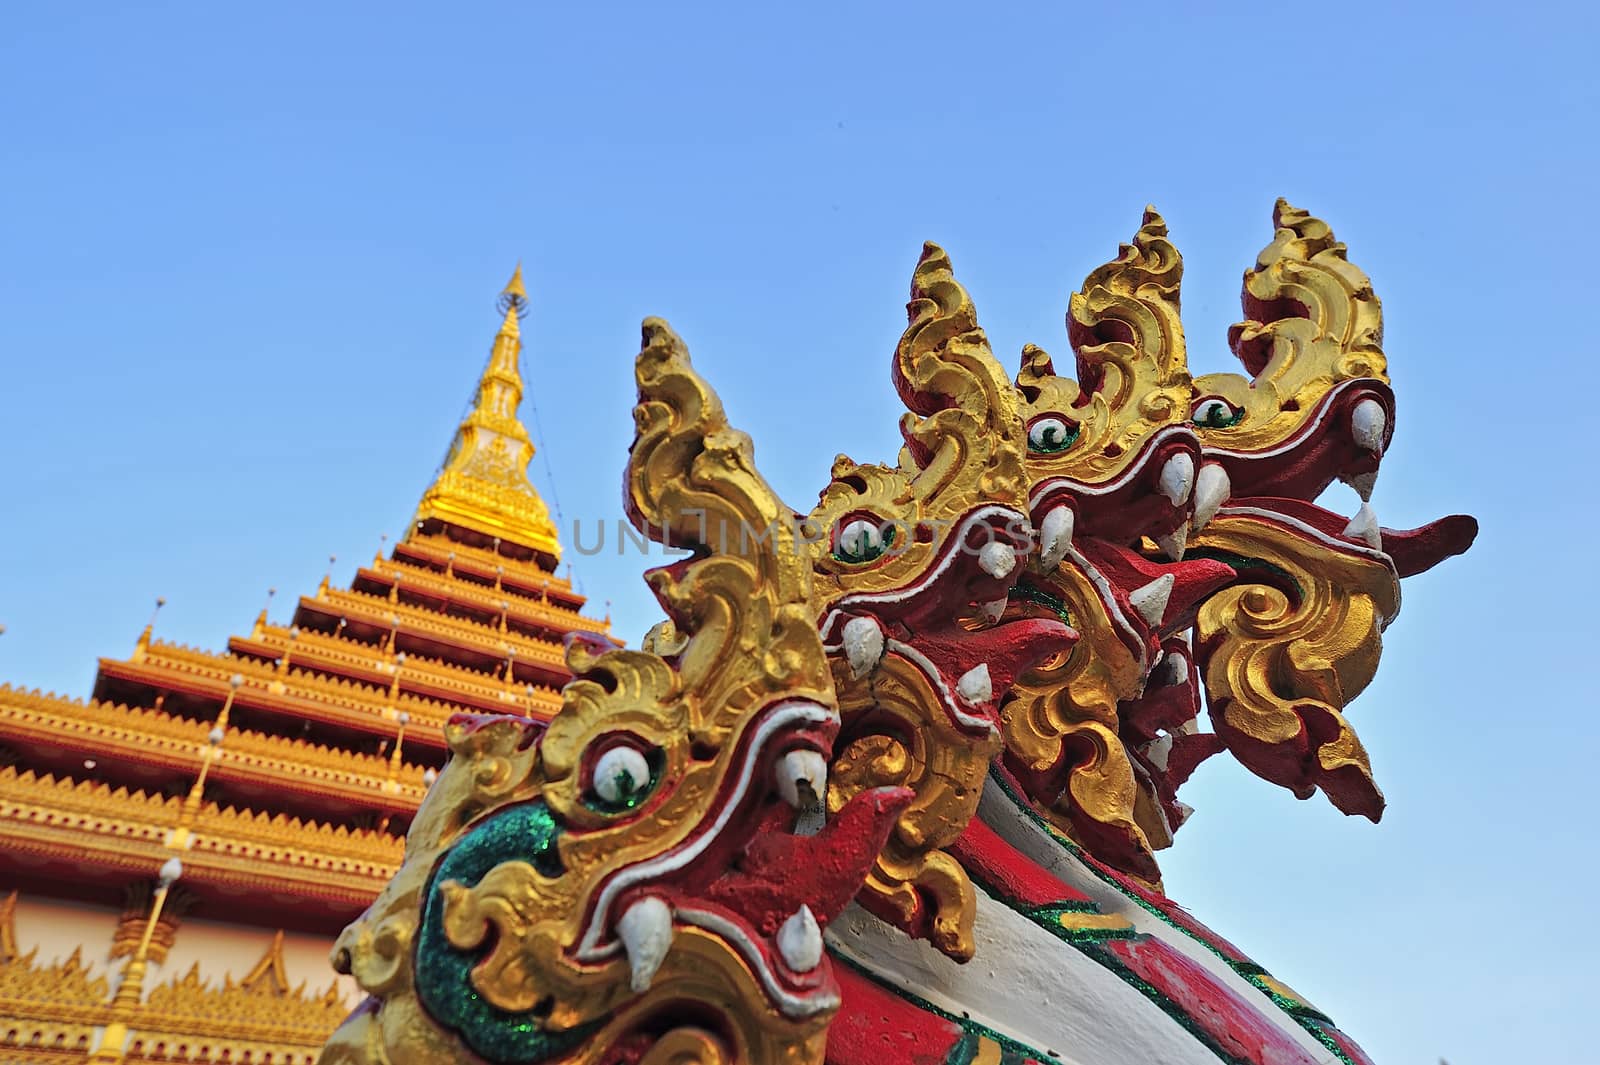 Golden pagoda at Wat Nong Wang temple, Khonkaen Thailand by think4photop